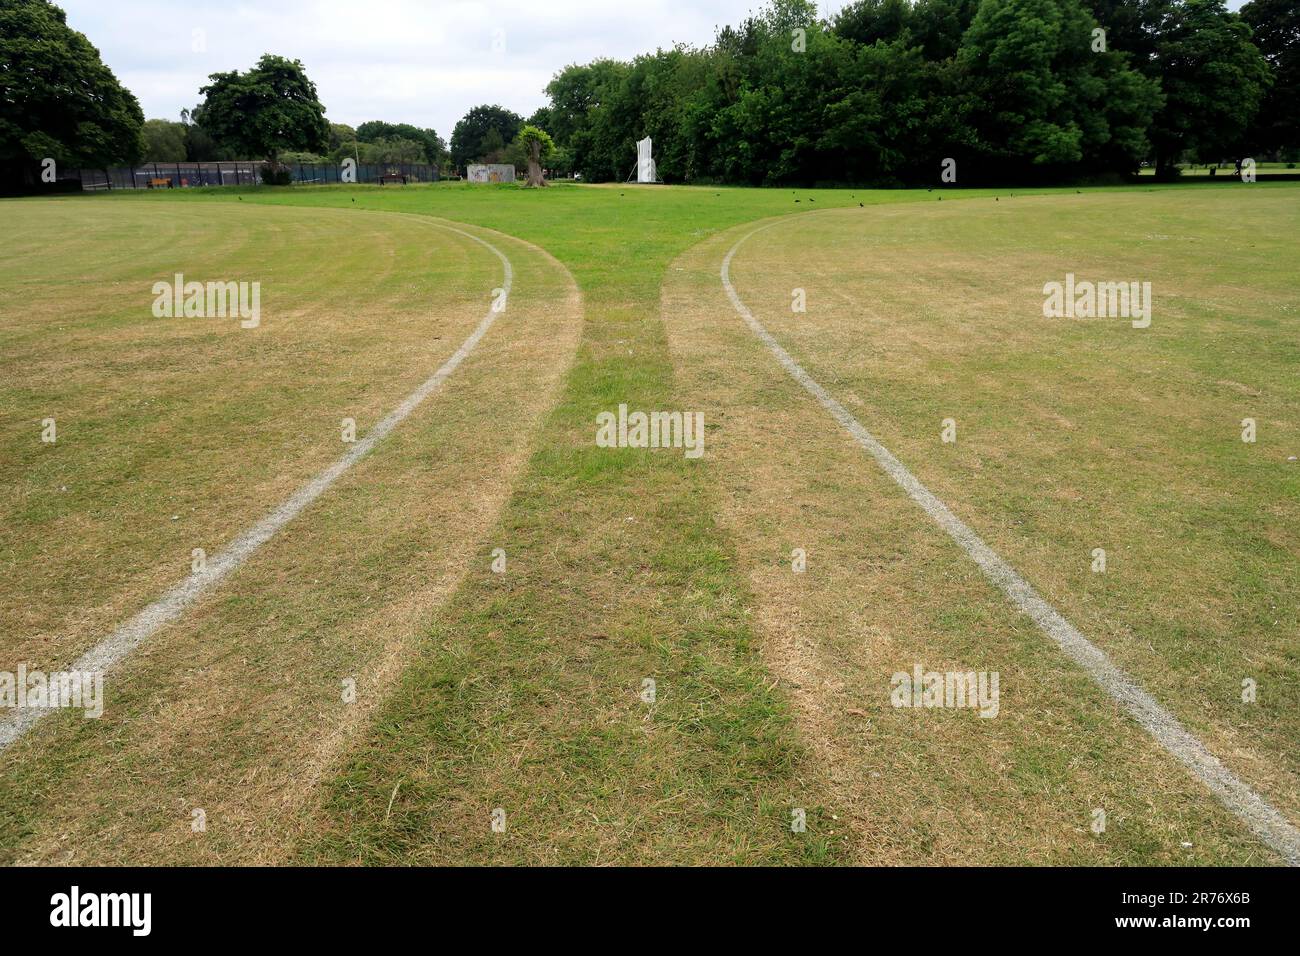 Konvergierende Grenzlinien zwischen zwei Cricketplätzen, was ein Interessantes visuelles Muster ergibt. . Juni 2023. Sommer. Zyl. Stockfoto